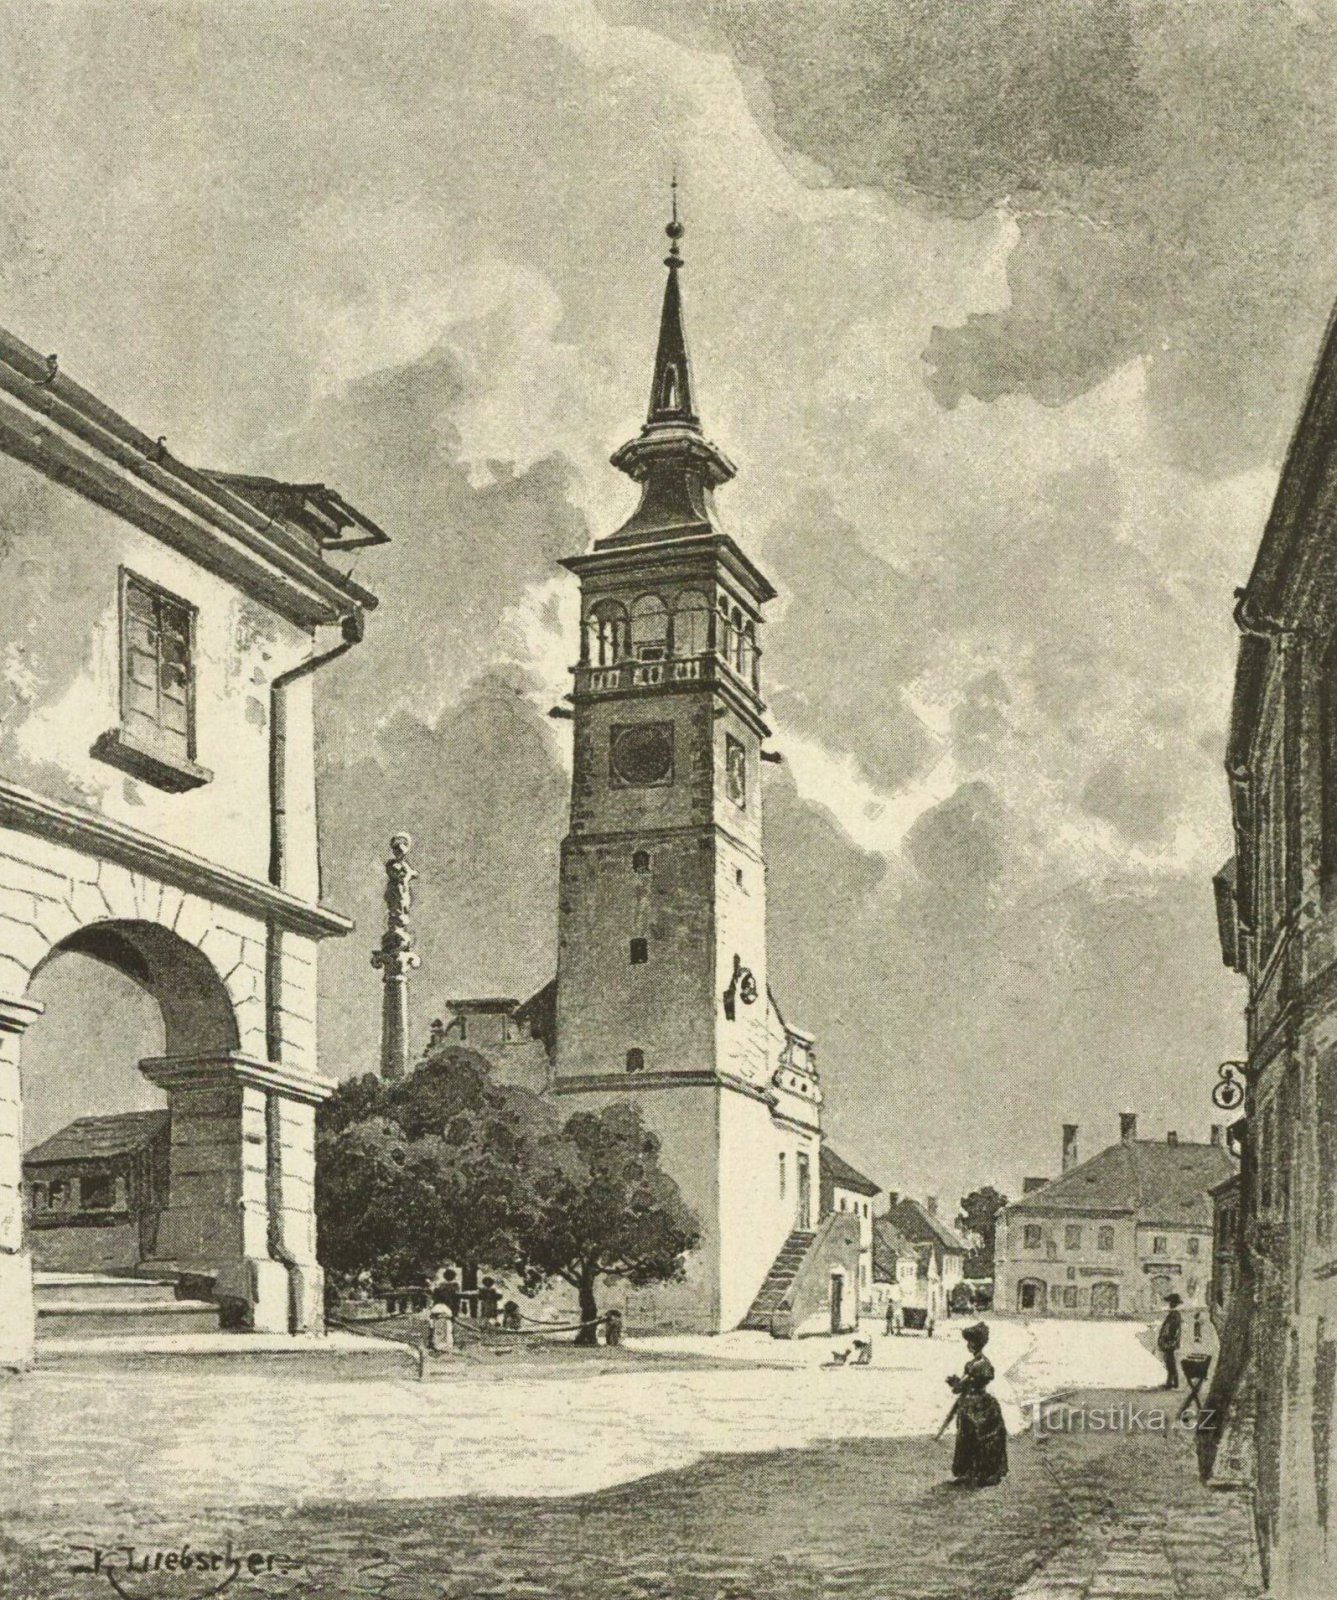 Turnul primăriei cu coloana mariană din Dobruška în a doua jumătate a secolului al XIX-lea